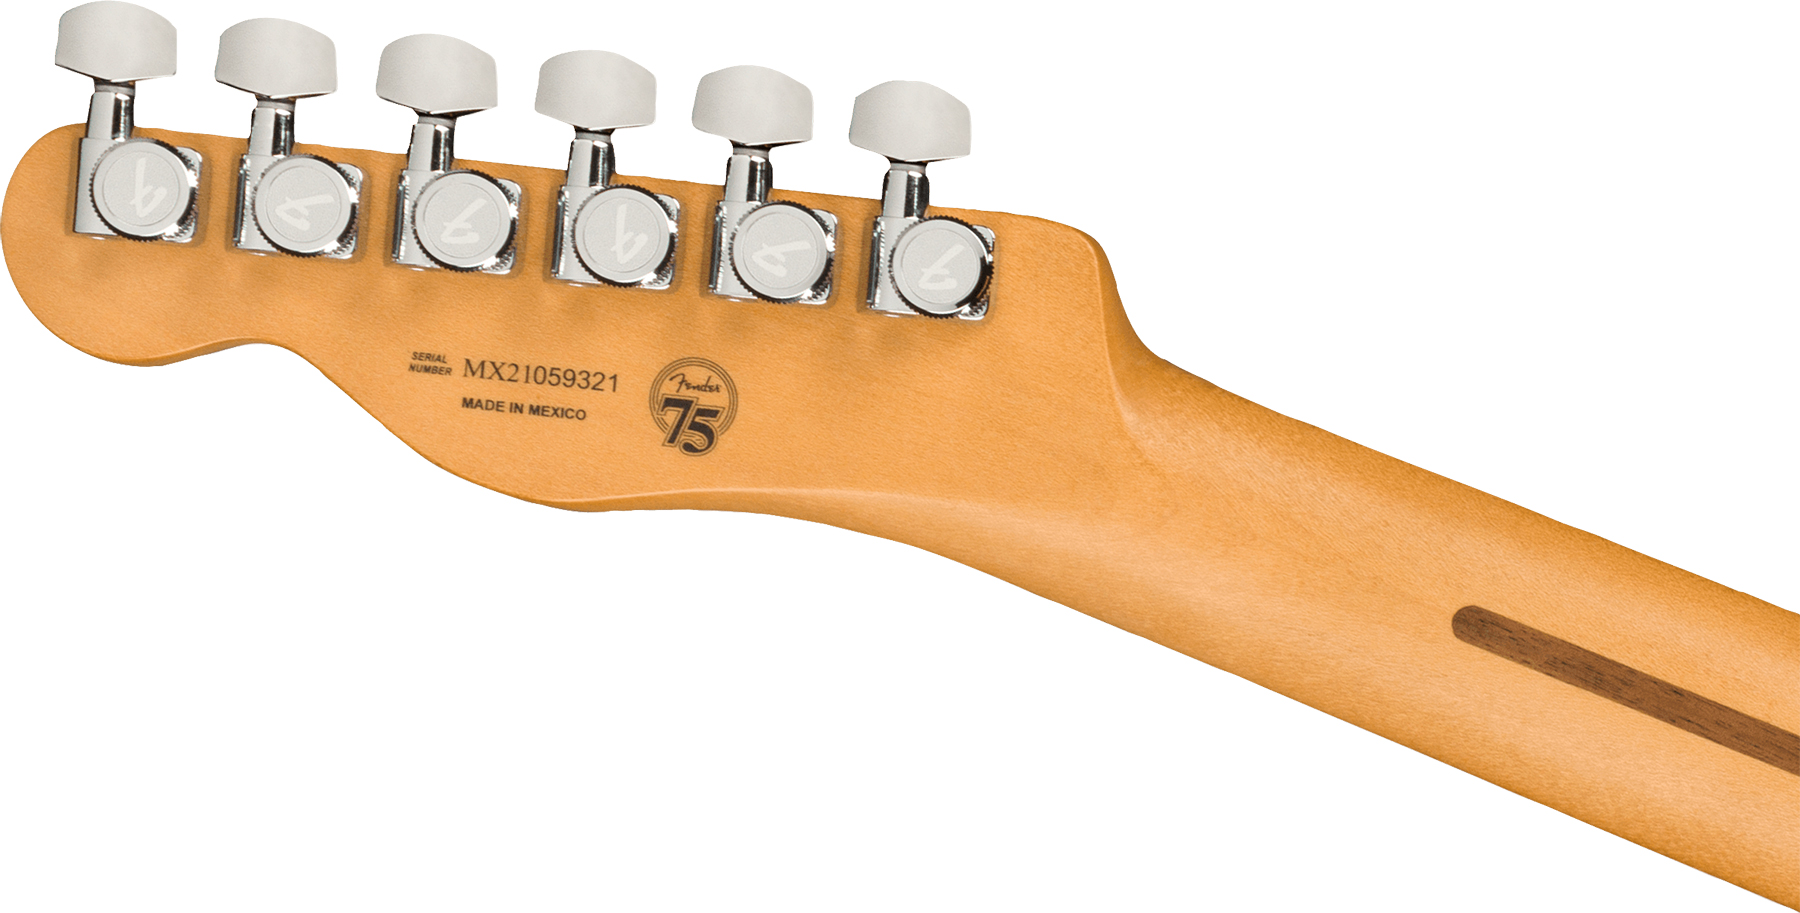 Fender Tele Player Plus Nashville Mex 3s Ht Mn - Butterscotch Blonde - Tel shape electric guitar - Variation 3